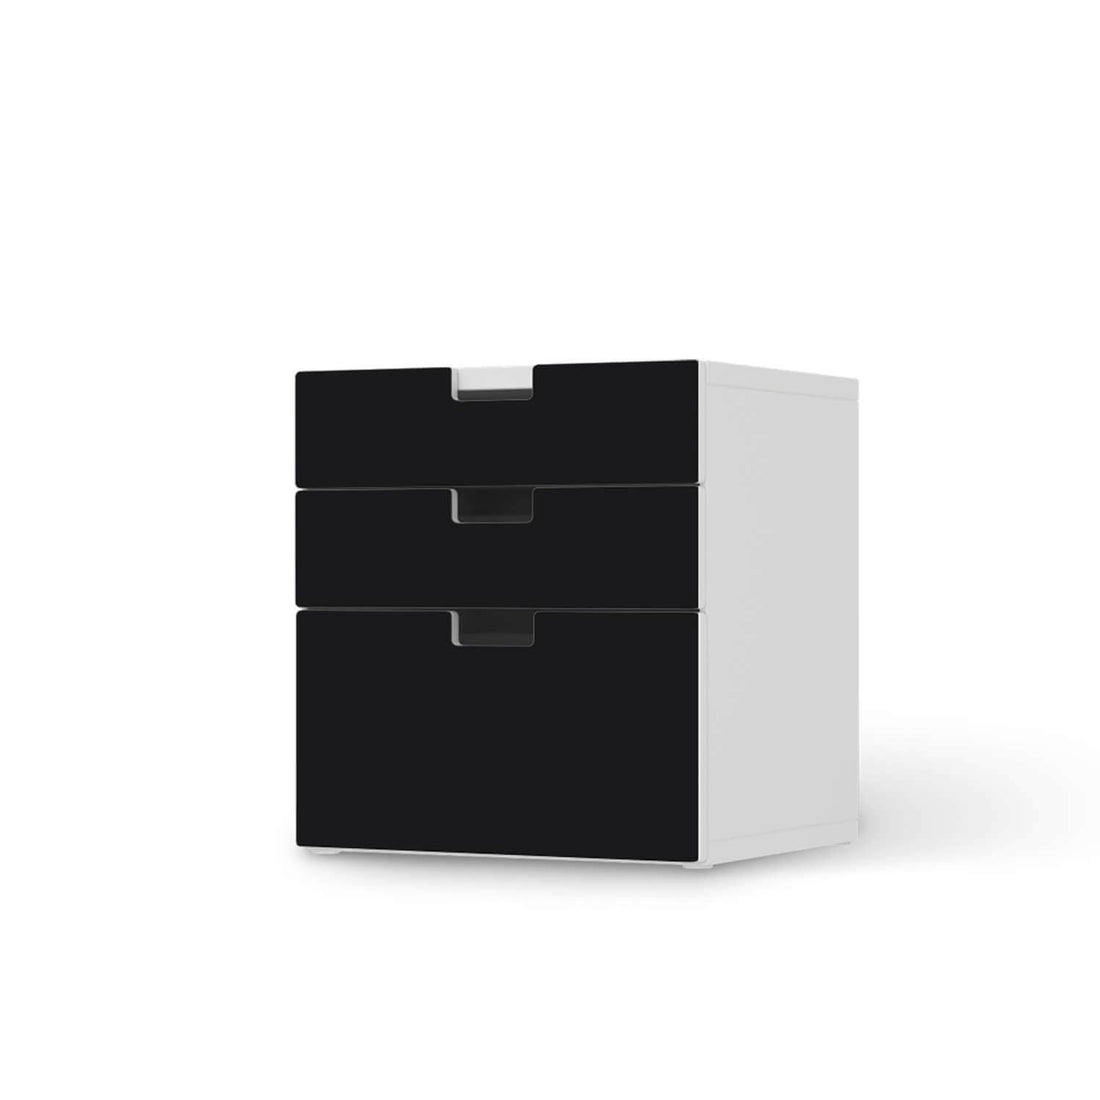 Folie für Möbel Schwarz - IKEA Stuva Kommode - 3 Schubladen (Kombination 1)  - weiss